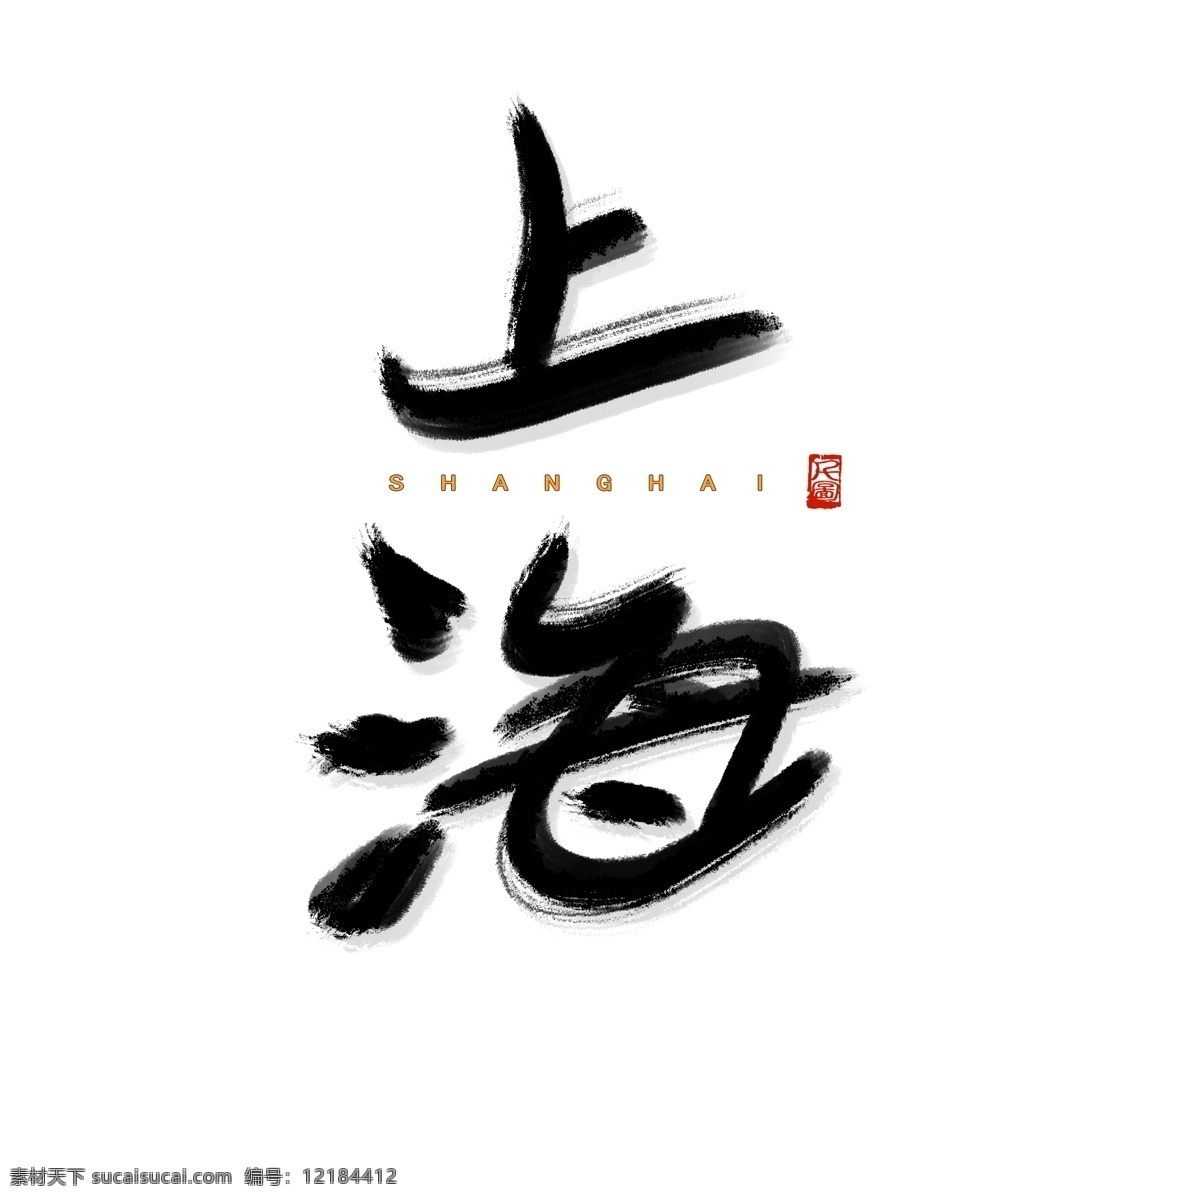 书法 字体 城市 地名 上海 艺术 字 商用 可商用 可商用字体 毛笔字 书法字体 艺术字 印泥印章 印章元素 红色印章 创意字体 上海字体 上海艺术字